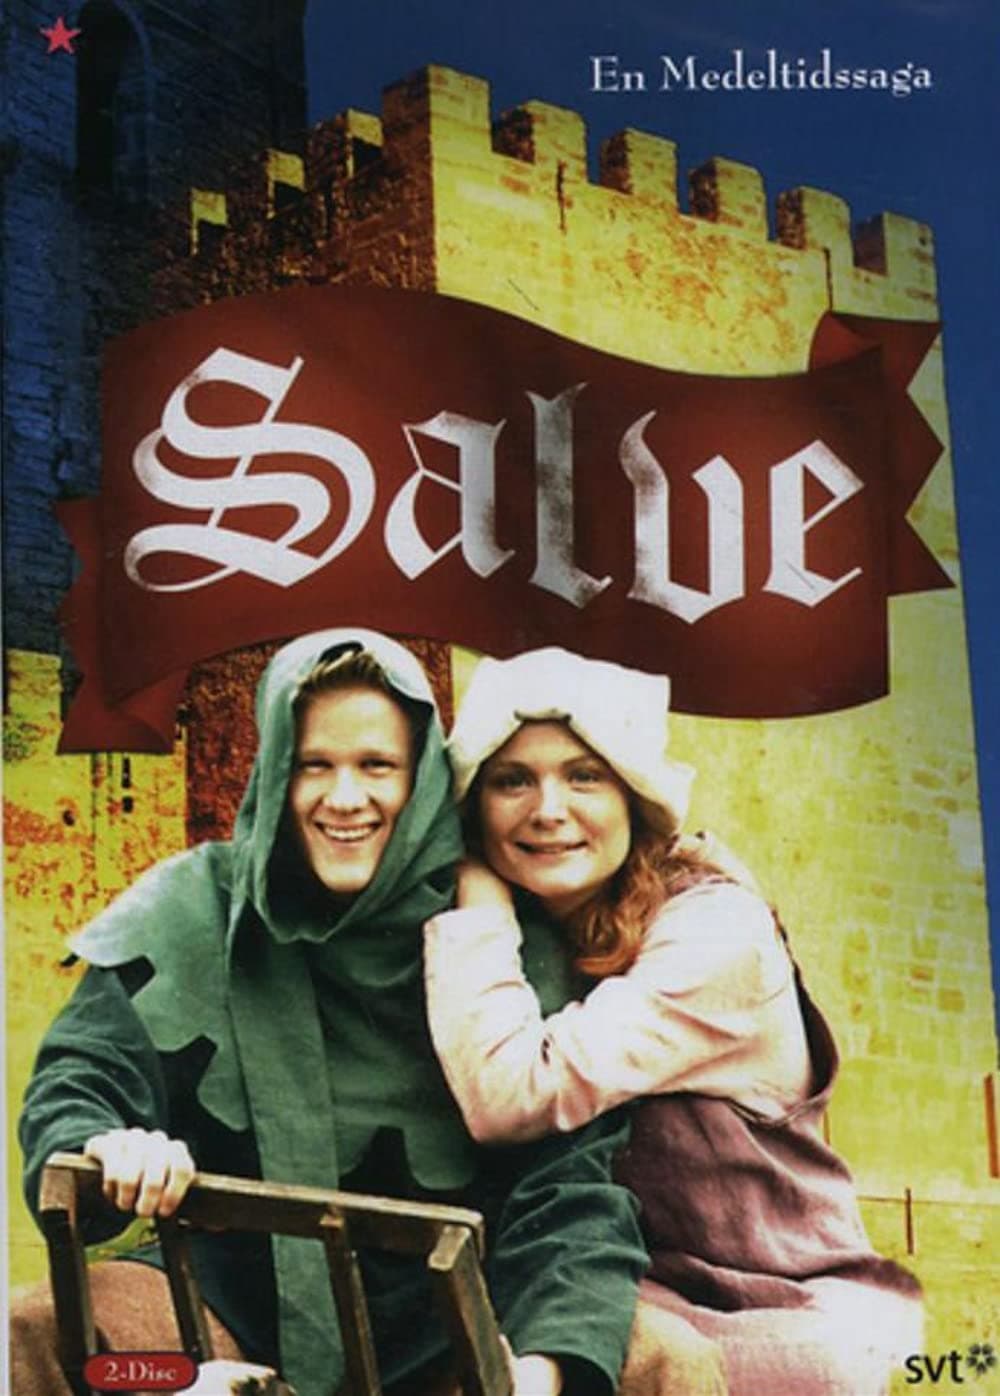 Salve - en medeltidssaga TV Shows About Middle Ages